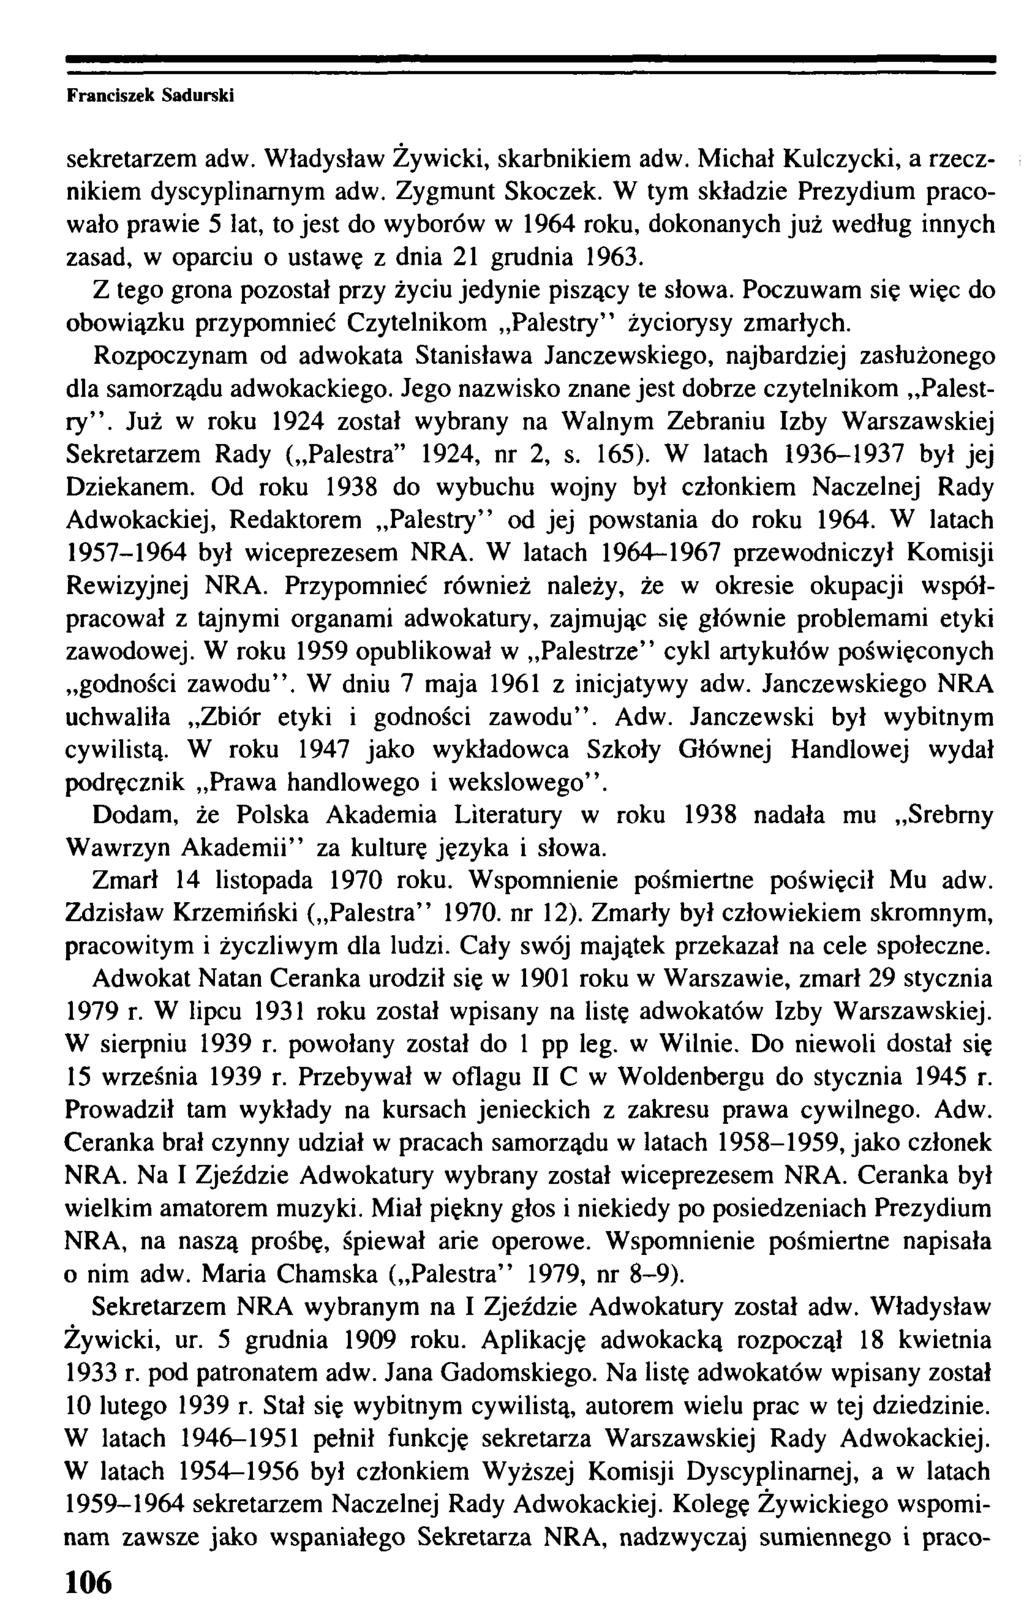 sekretarzem adw. Władysław Żywicki, skarbnikiem adw. Michał Kulczycki, a rzecznikiem dyscyplinarnym adw. Zygmunt Skoczek.